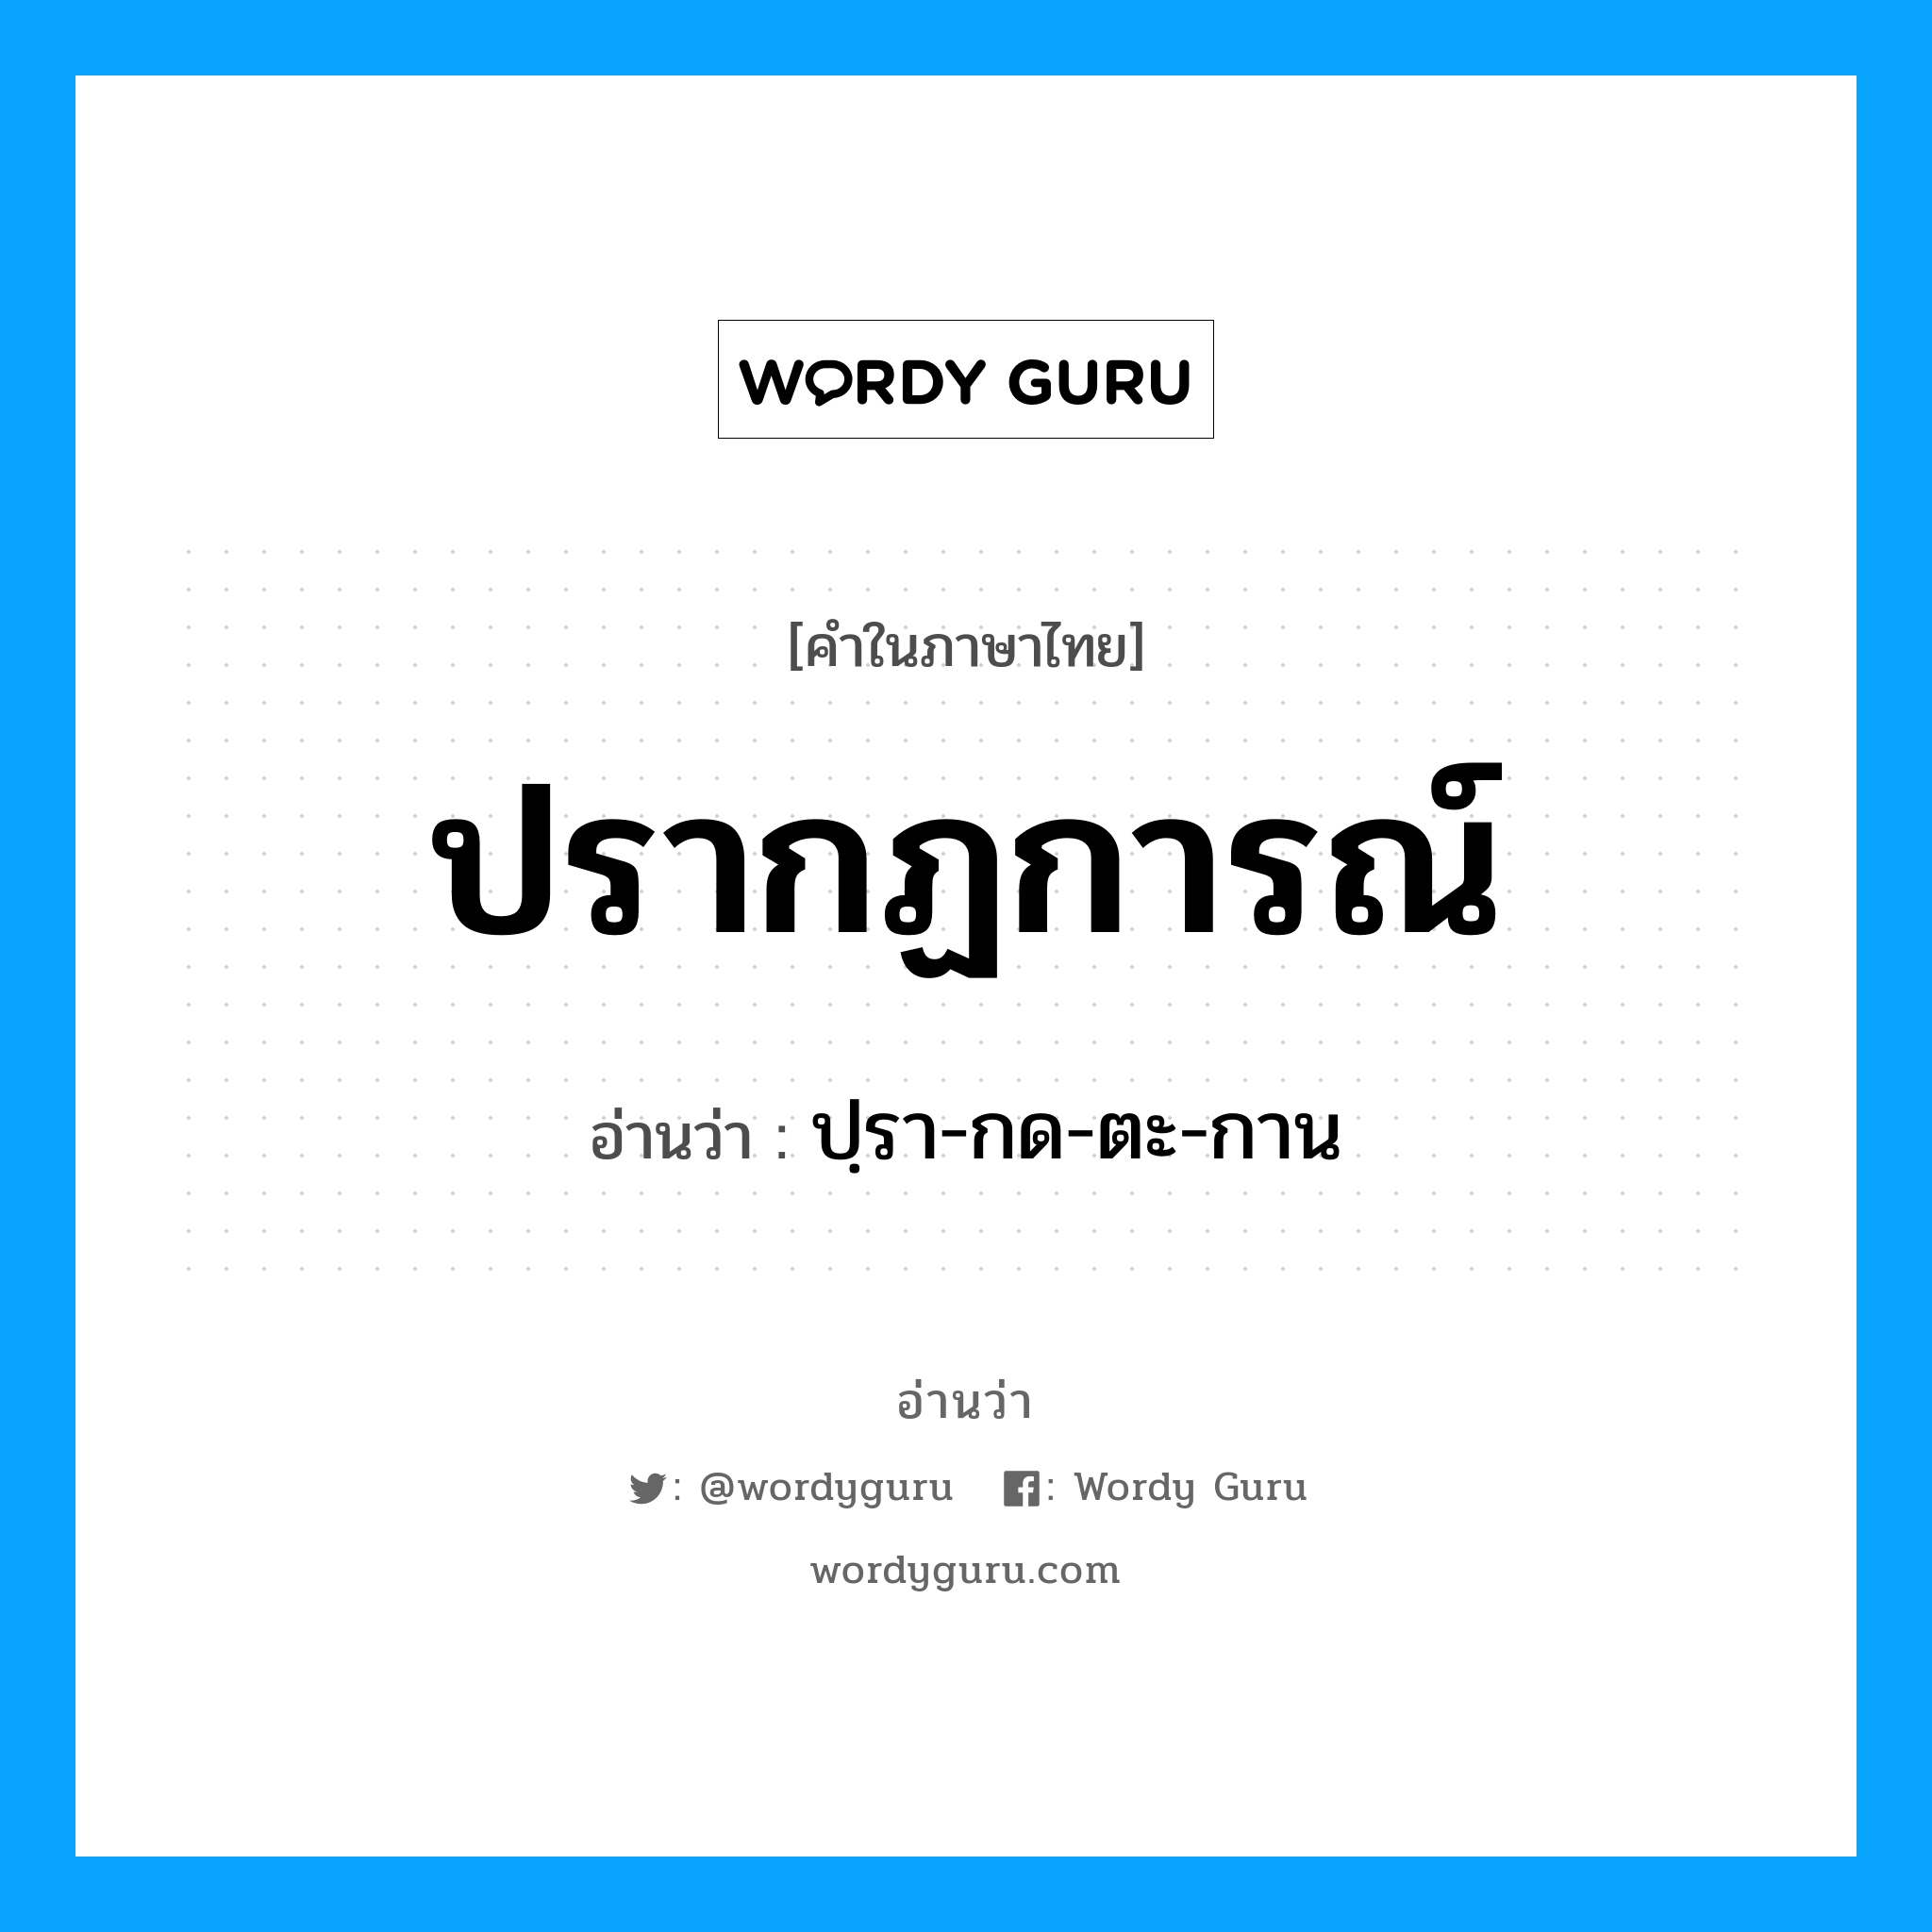 ปฺรา-กด-ตะ-กาน เป็นคำอ่านของคำไหน?, คำในภาษาไทย ปฺรา-กด-ตะ-กาน อ่านว่า ปรากฏการณ์